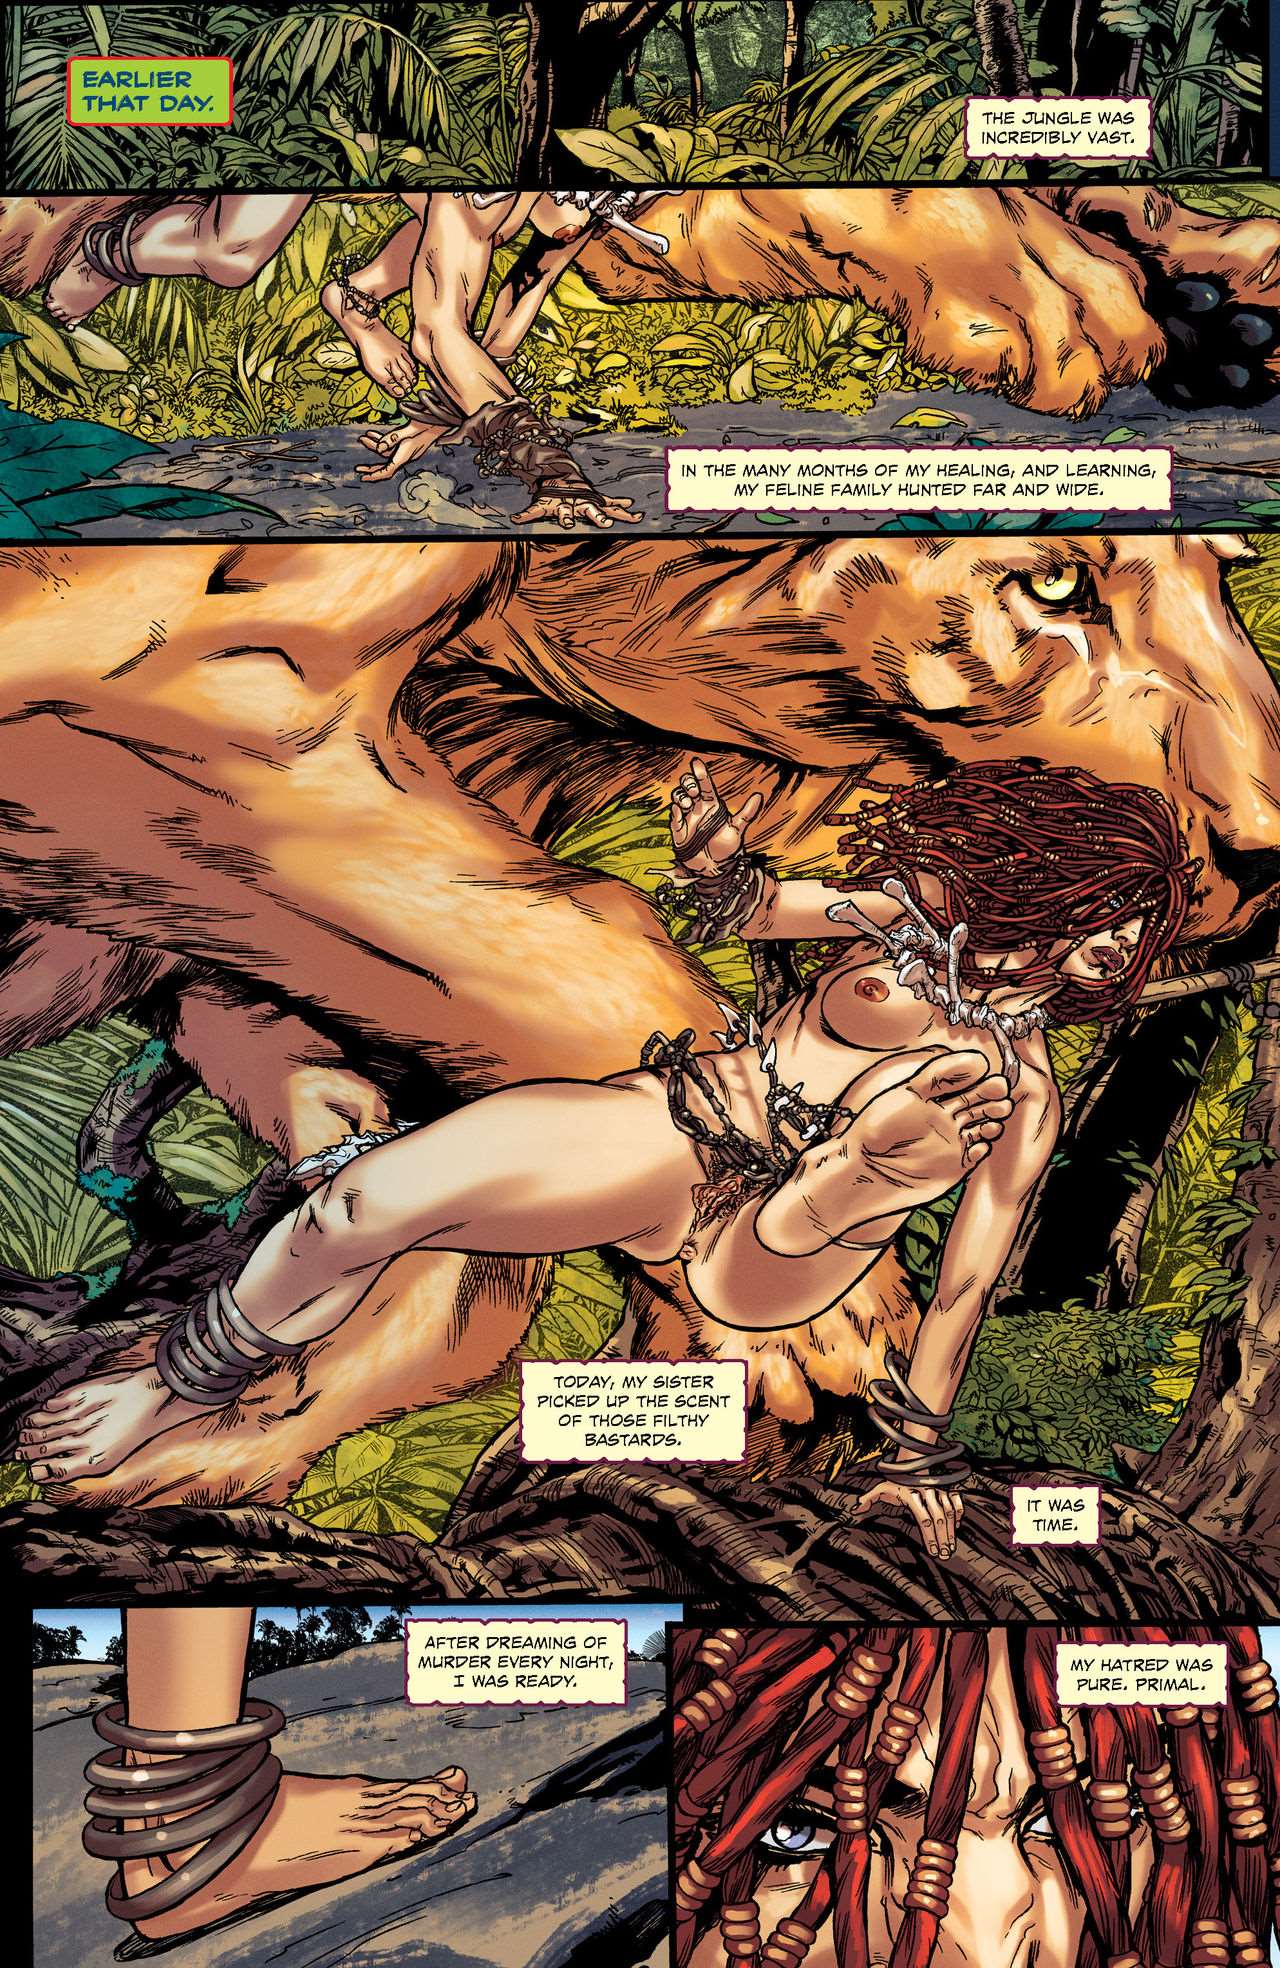 Jungle Fantasy Secrets Issue 04 Porn Comics